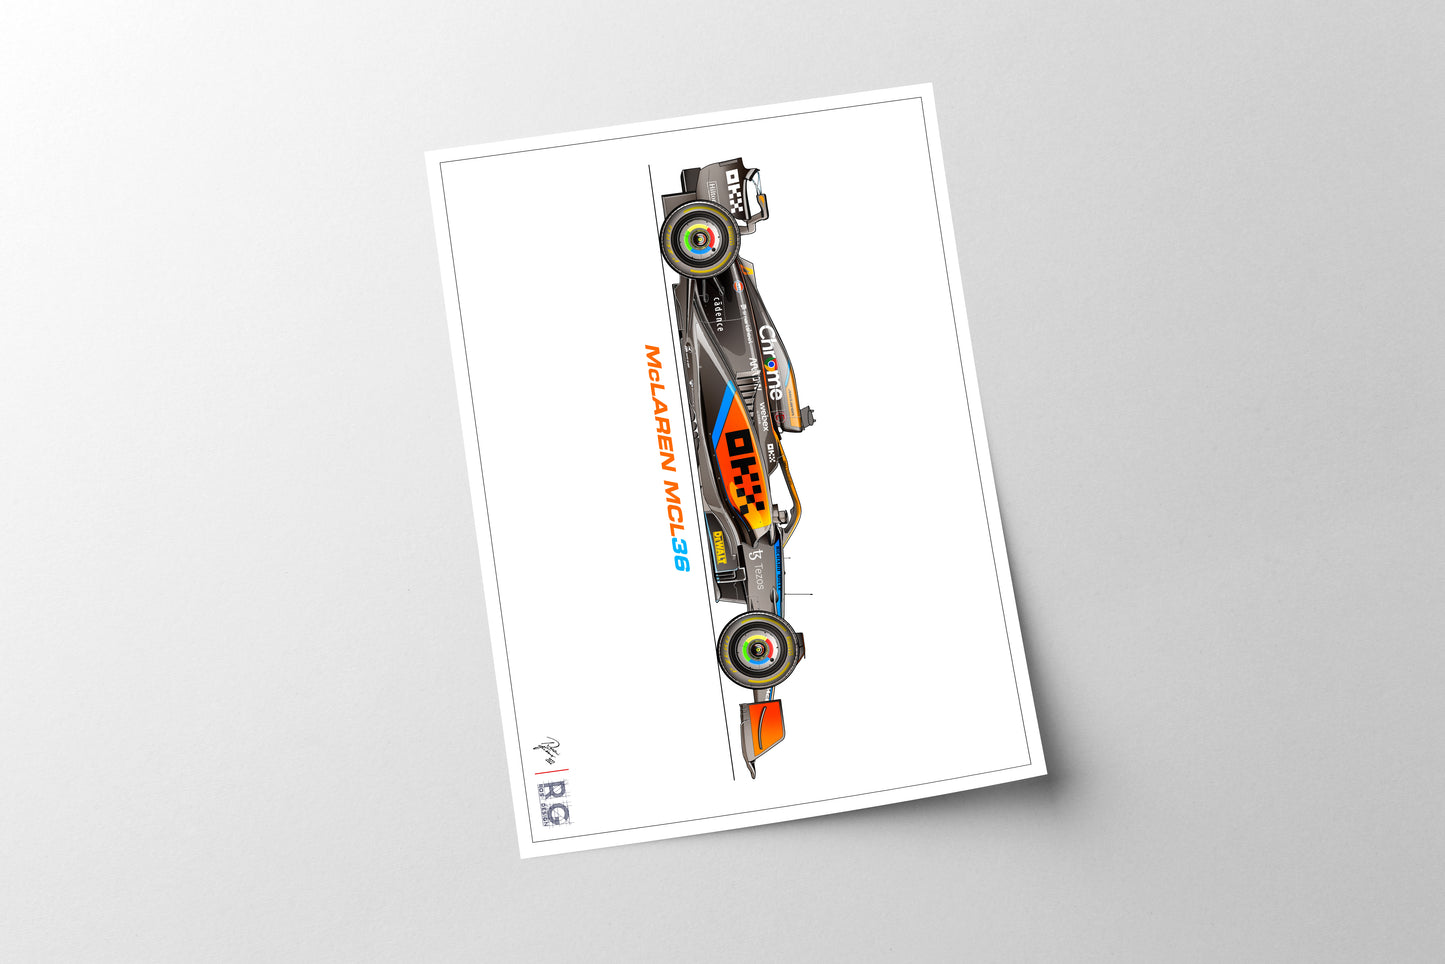 McLaren MCL36 Poster F1 Art Print A3 A2